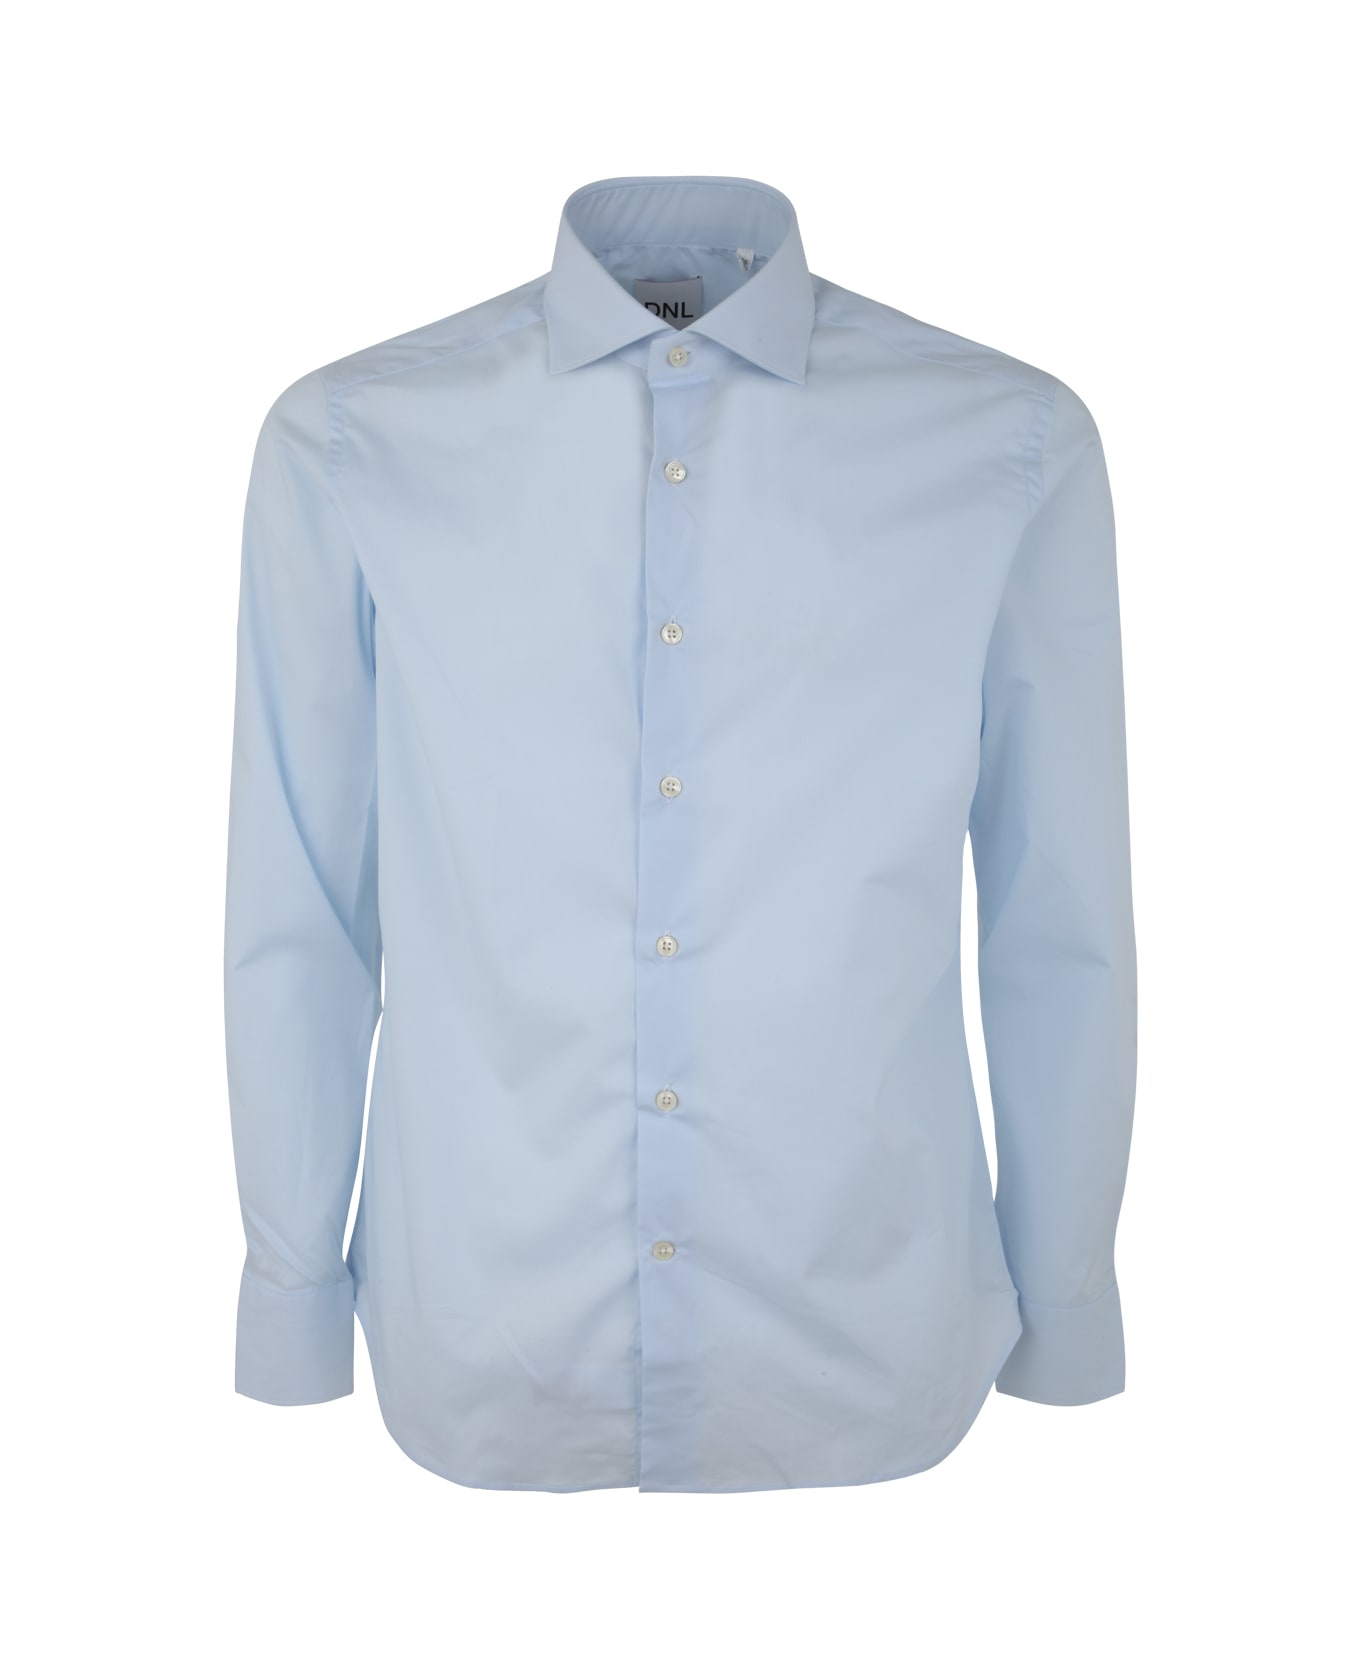 DNL Shirt - Light Blue シャツ